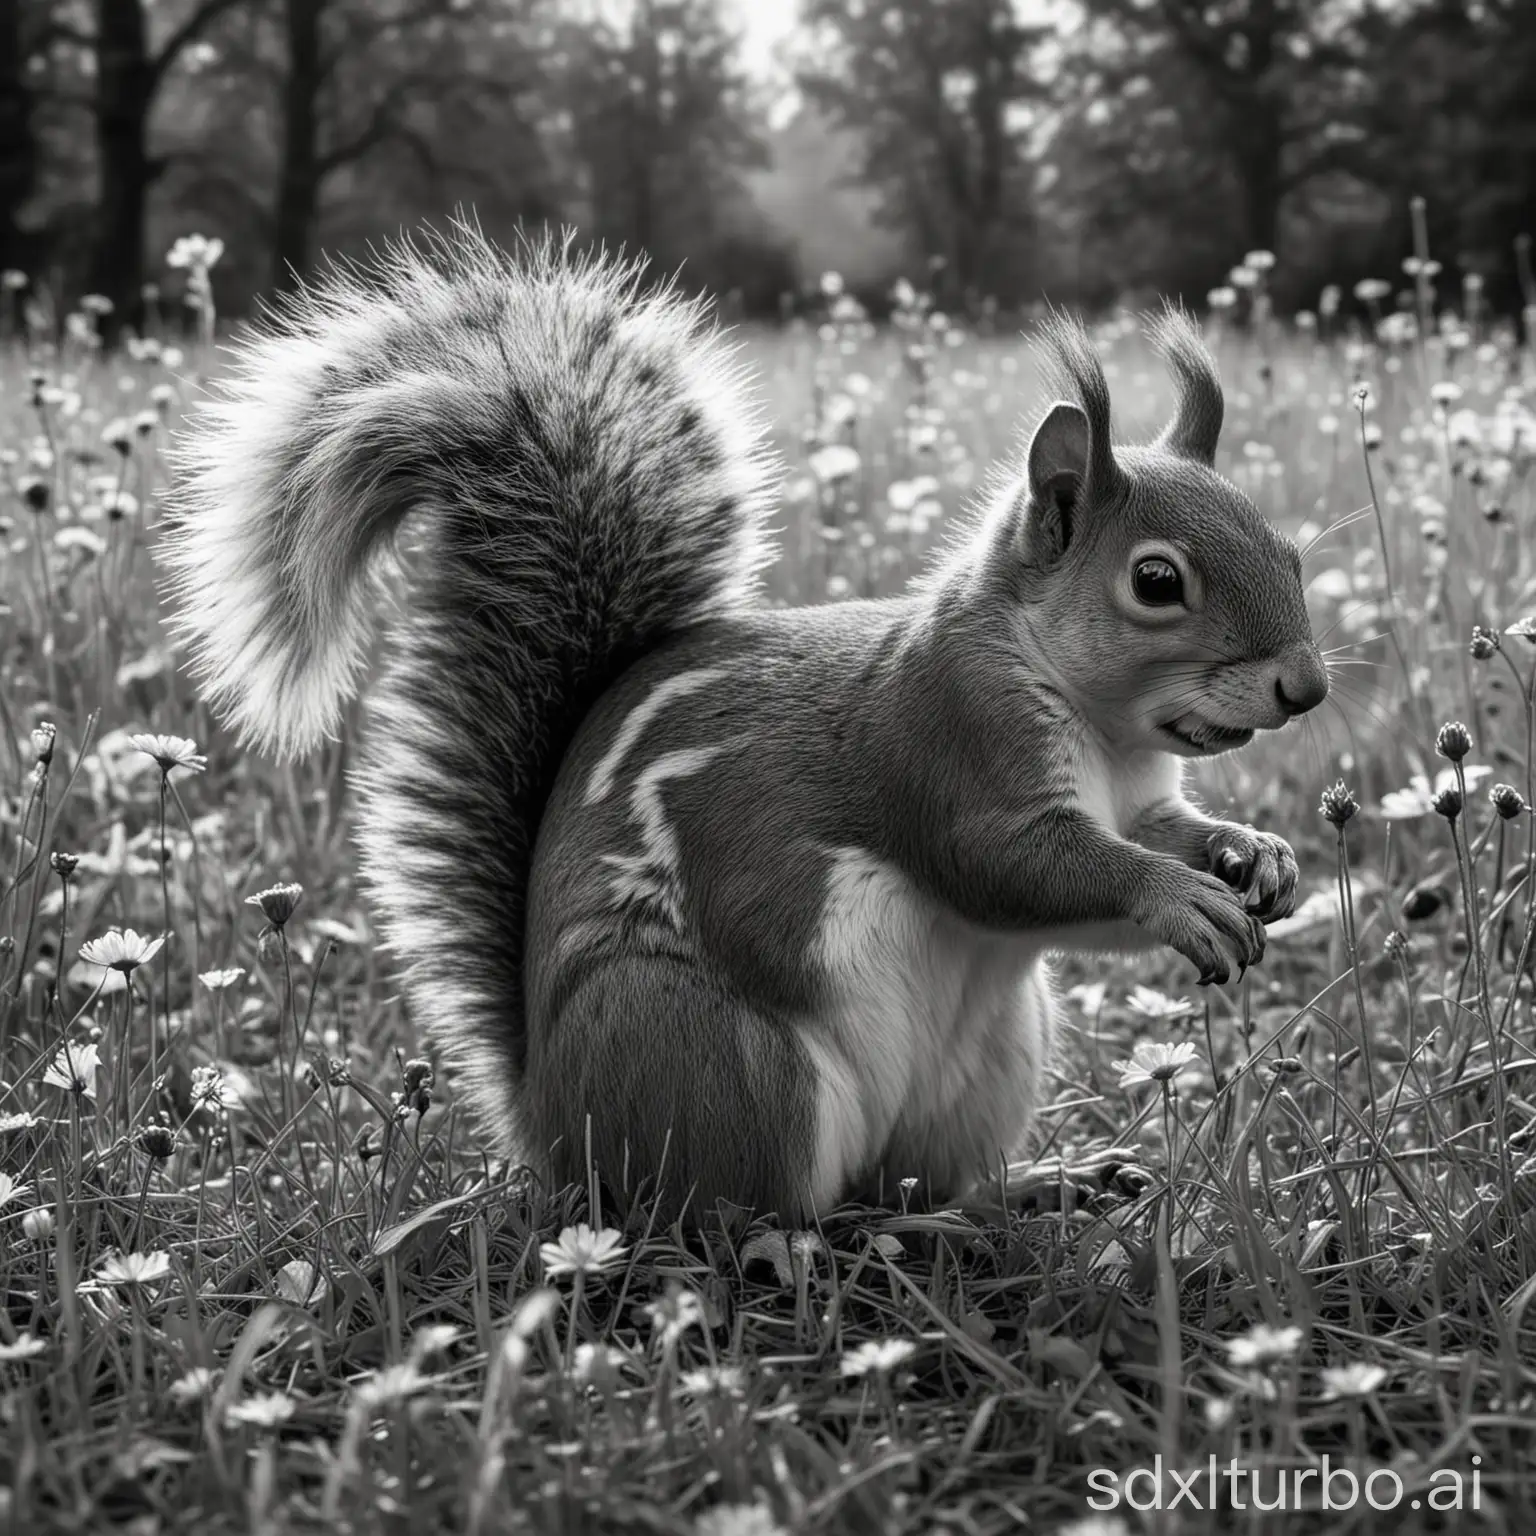 erstelle ein realistisches Schwarz-Weiss-Bild eines Eichhörnchens auf einer Wiese, abseits von spielenden Kindern
